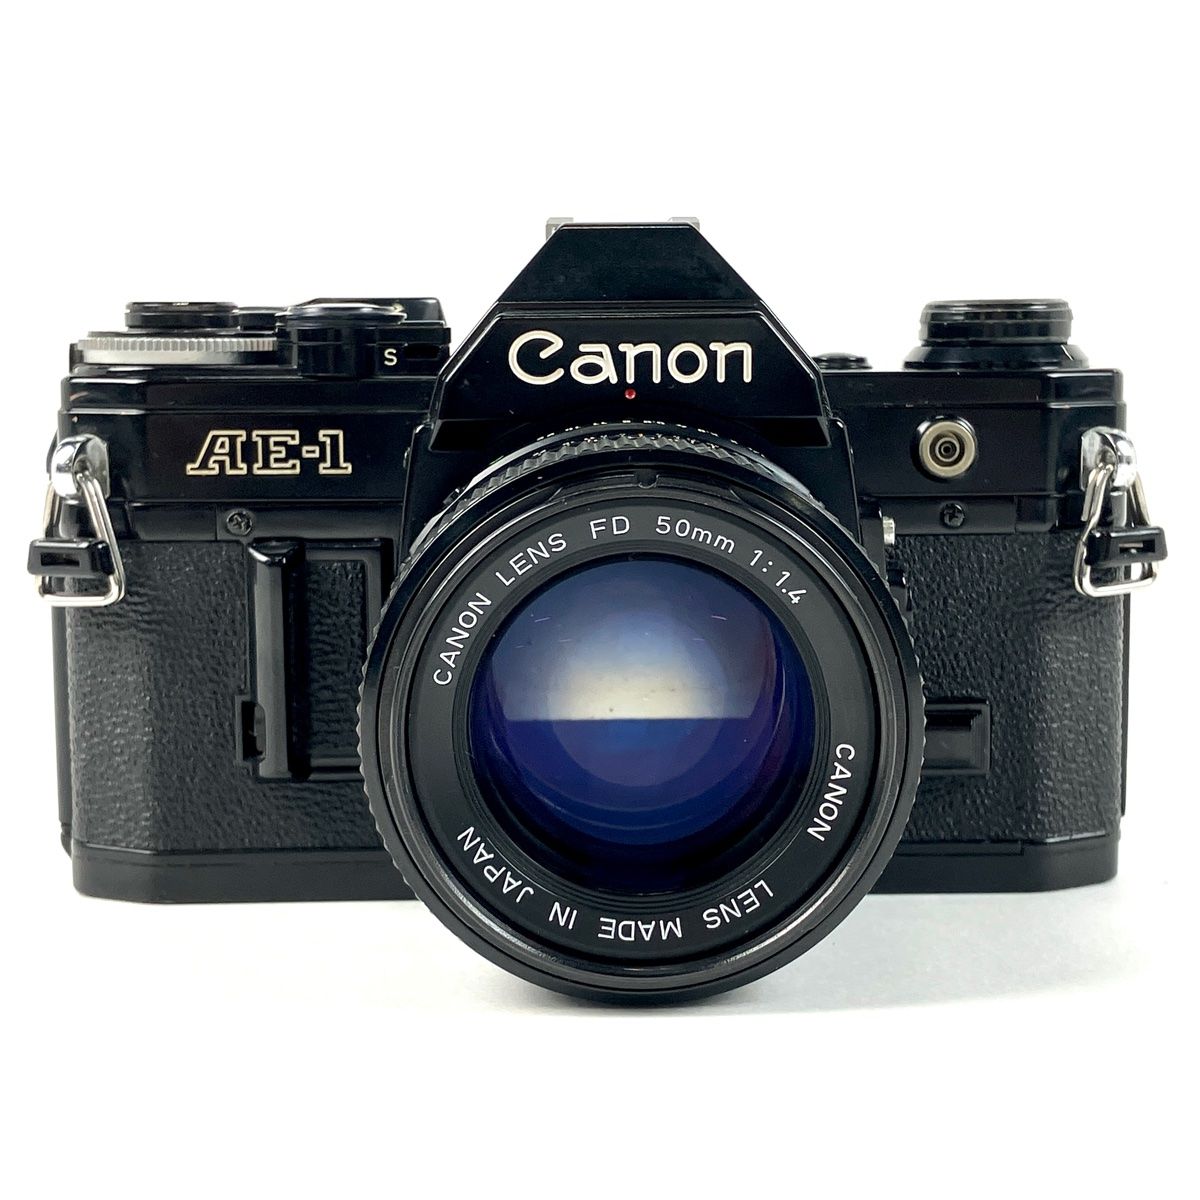 キヤノン Canon AE-1 ブラック + NEW FD 50mm F1.4 フィルム マニュアルフォーカス 一眼レフカメラ 【中古】